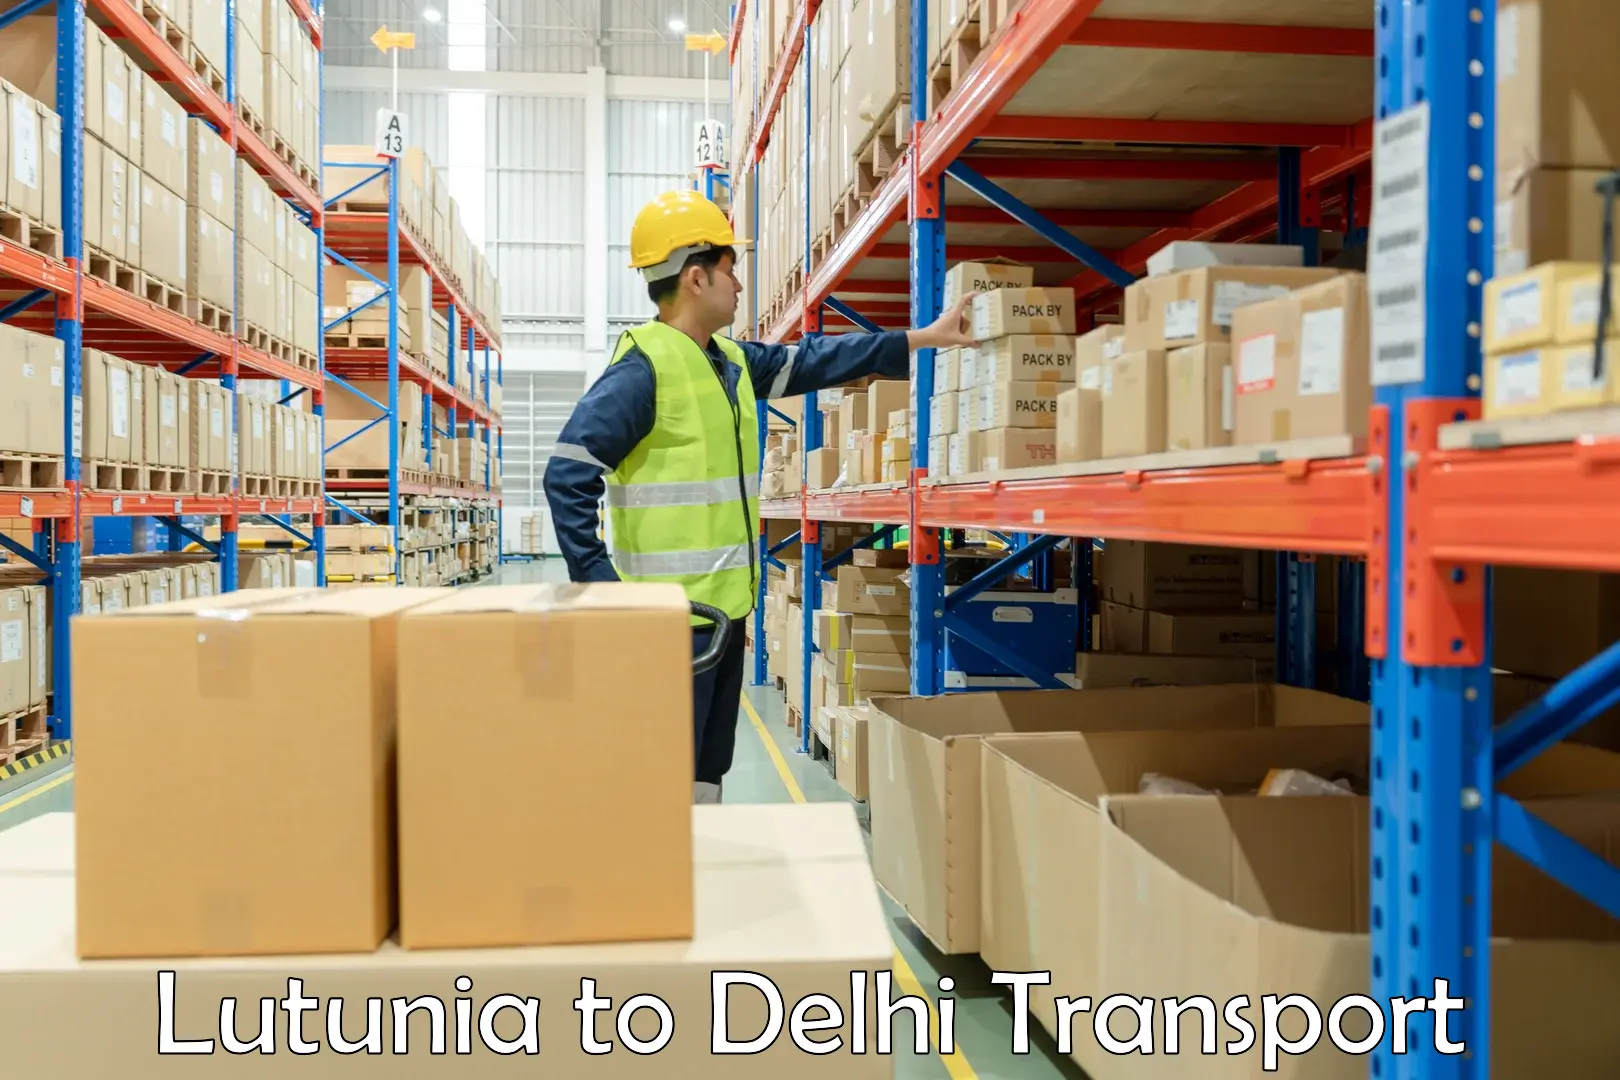 Furniture transport service Lutunia to Delhi